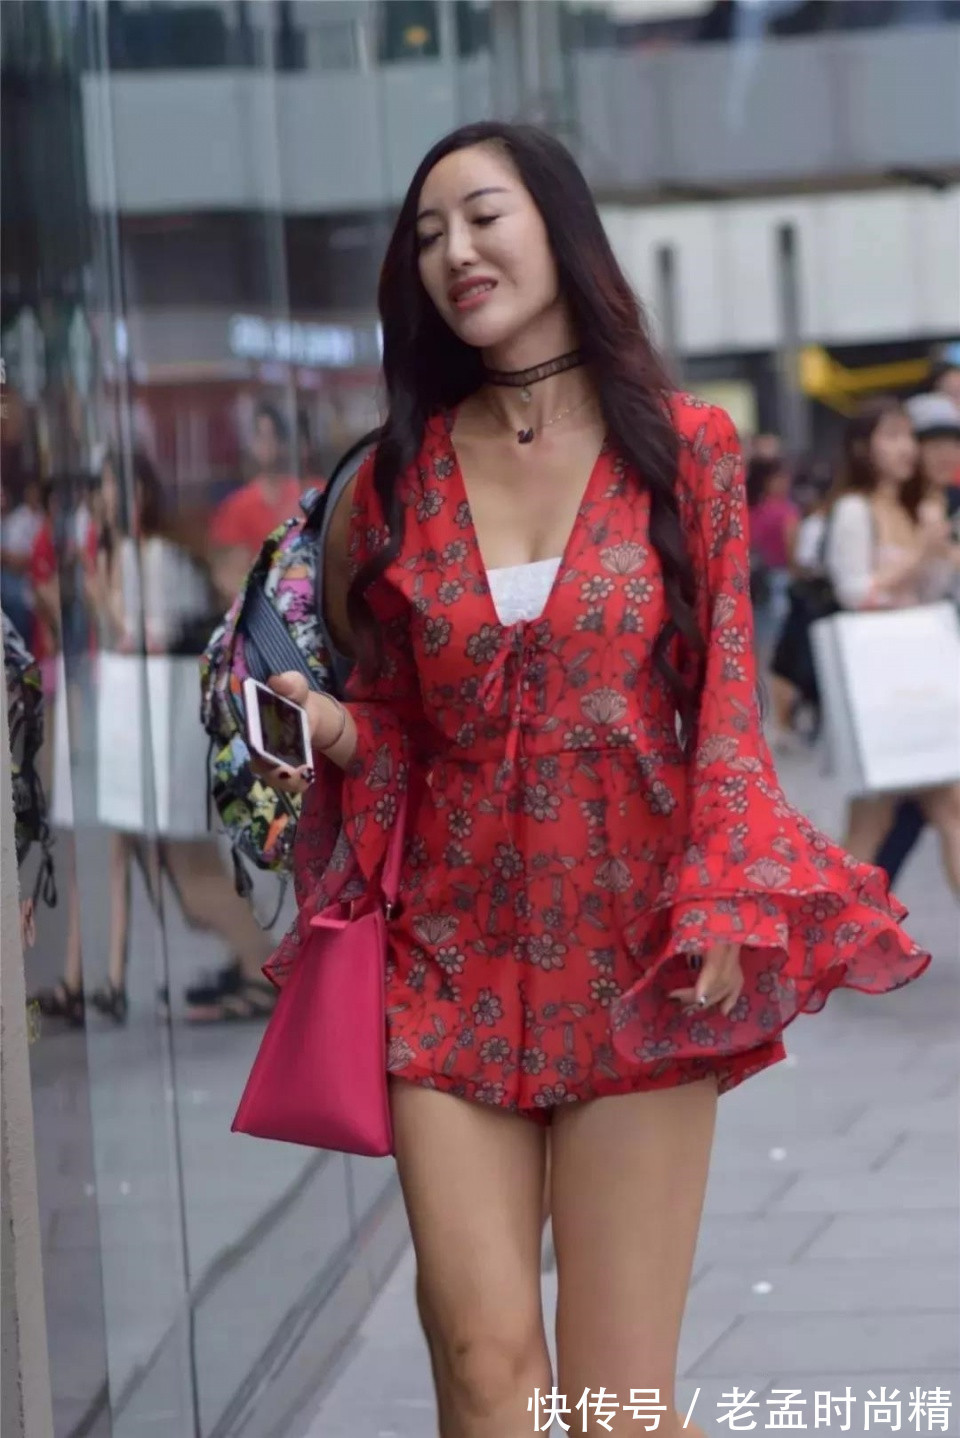 绸缎短裙|街拍: 穿红色绸缎短裙的性感靓丽美妇, 优雅的气质风度翩翩!